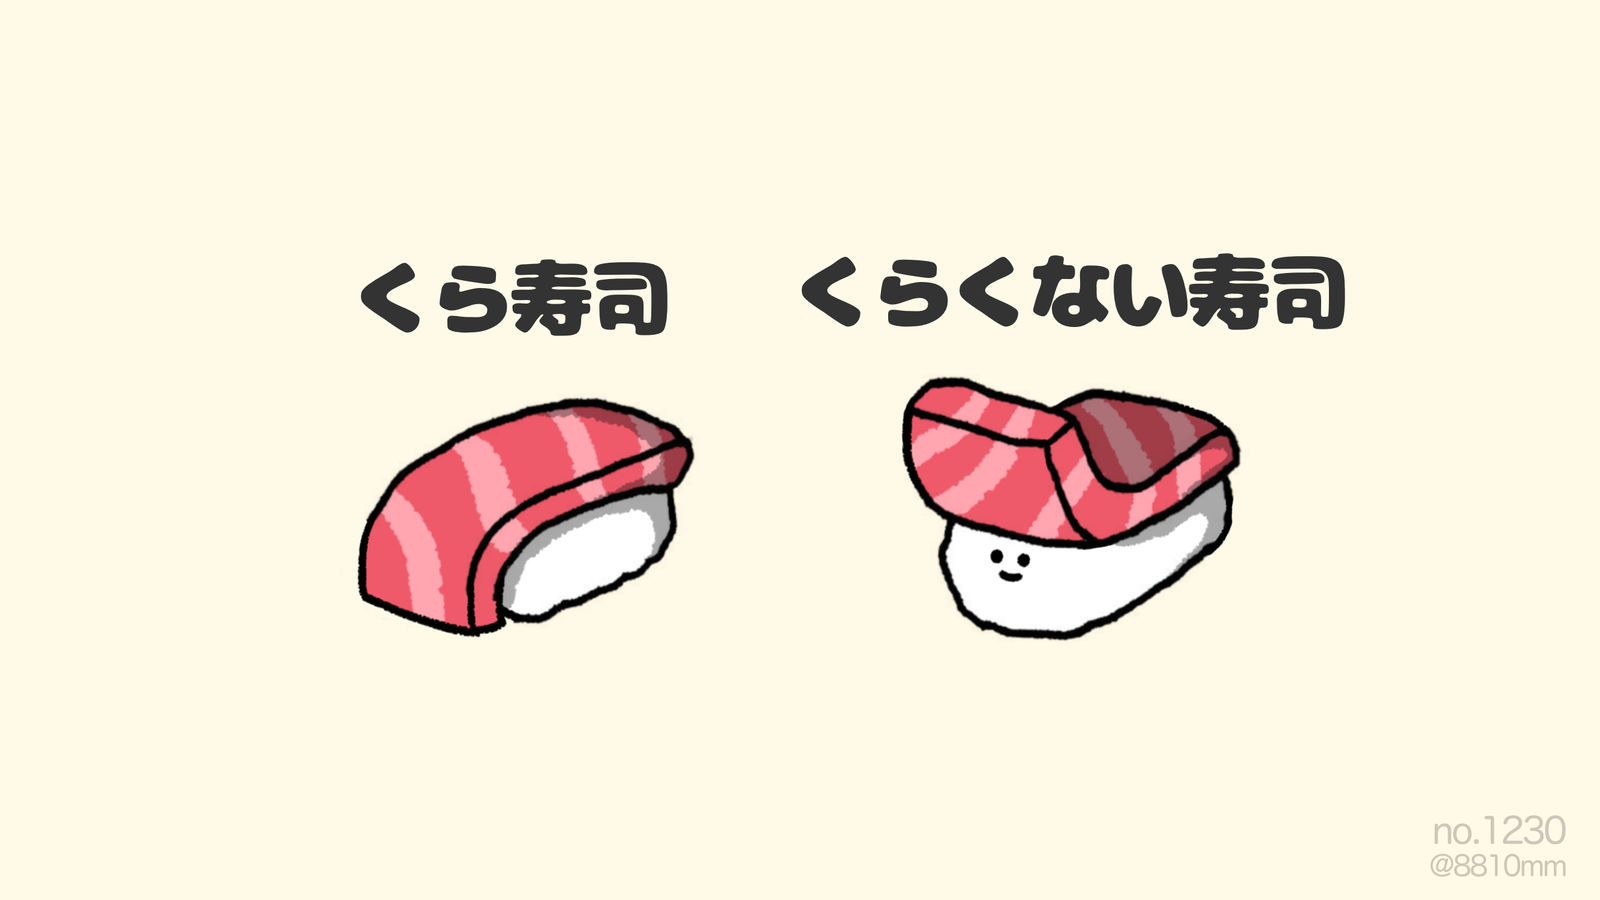 仓寿司-寿司kura寿司